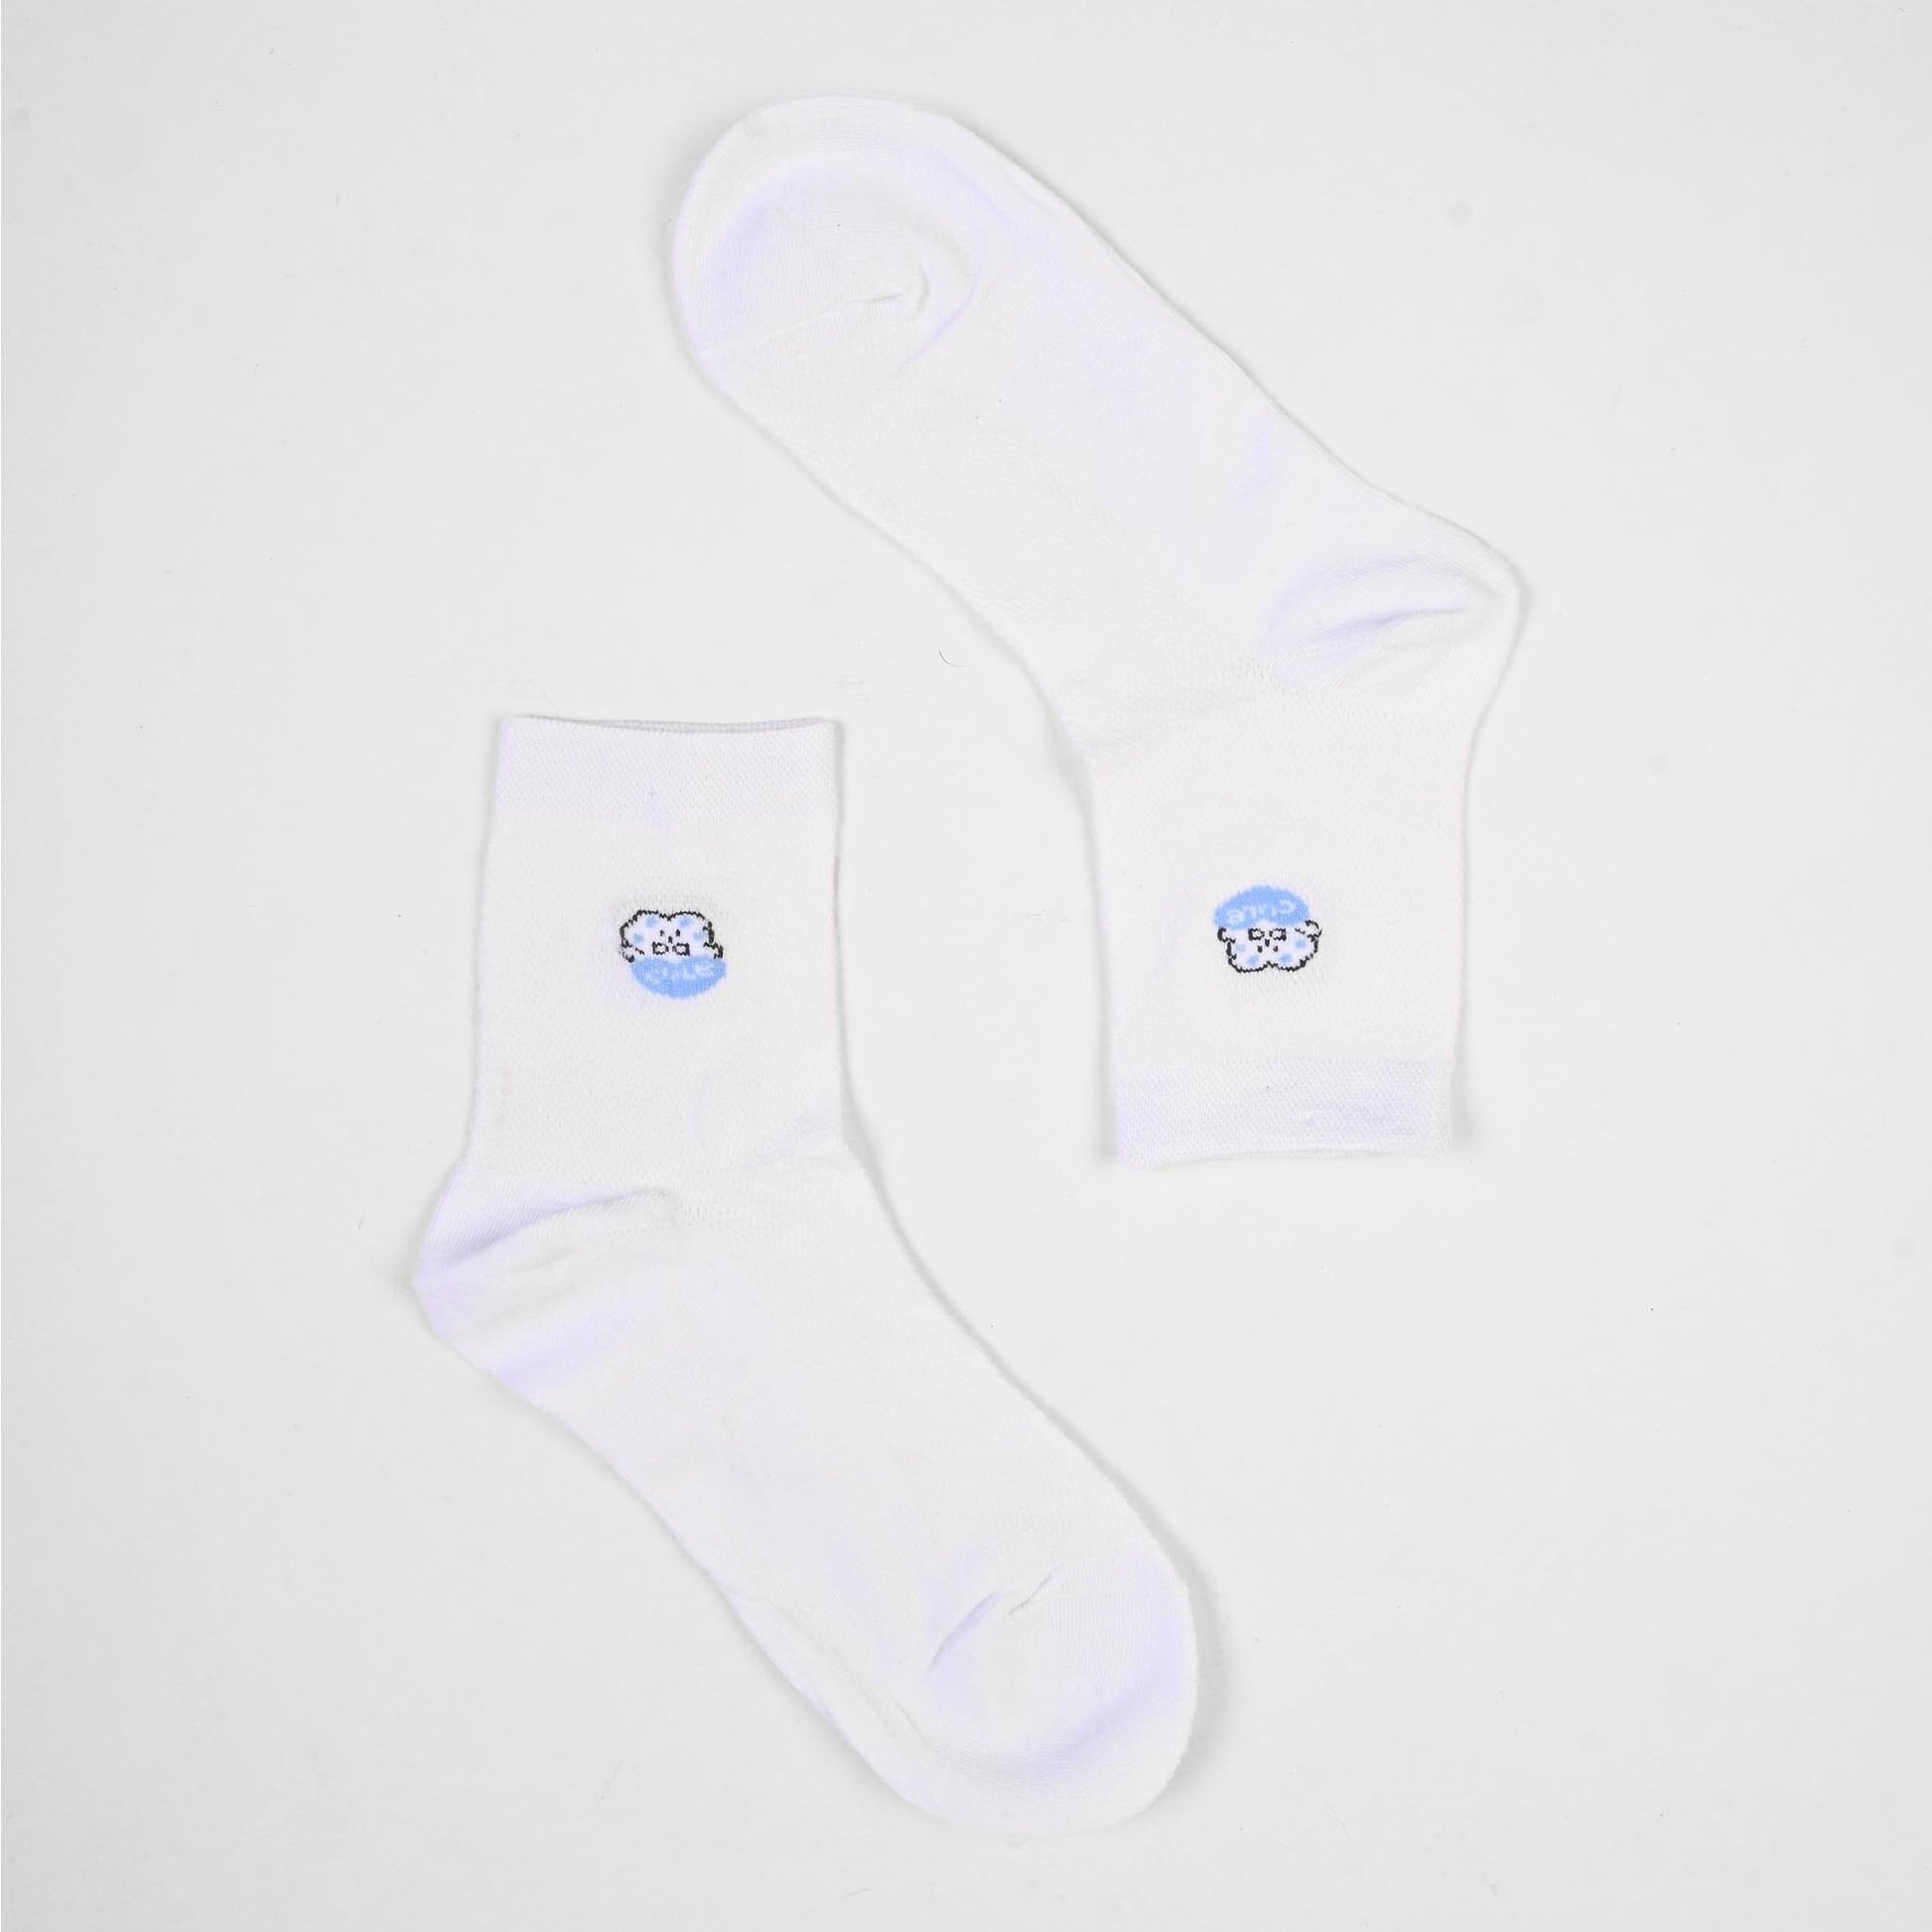 Vienna Women's Graz Anklet Socks Socks SRL White D3 EUR 35-40